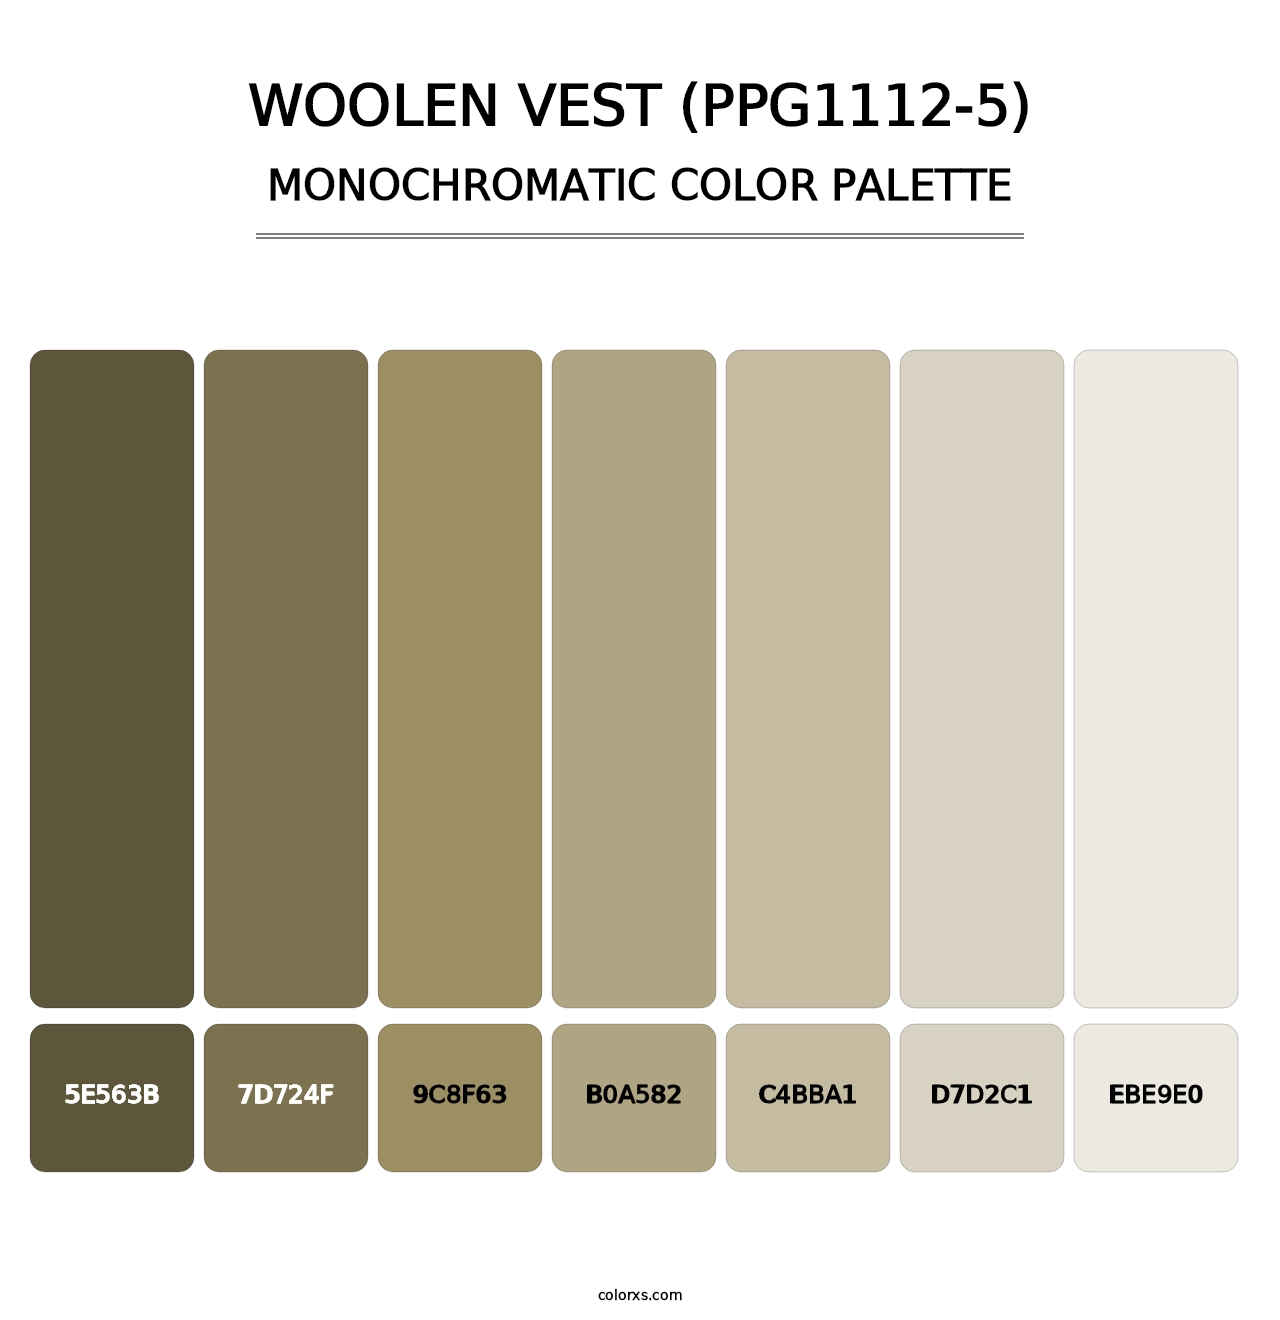 Woolen Vest (PPG1112-5) - Monochromatic Color Palette